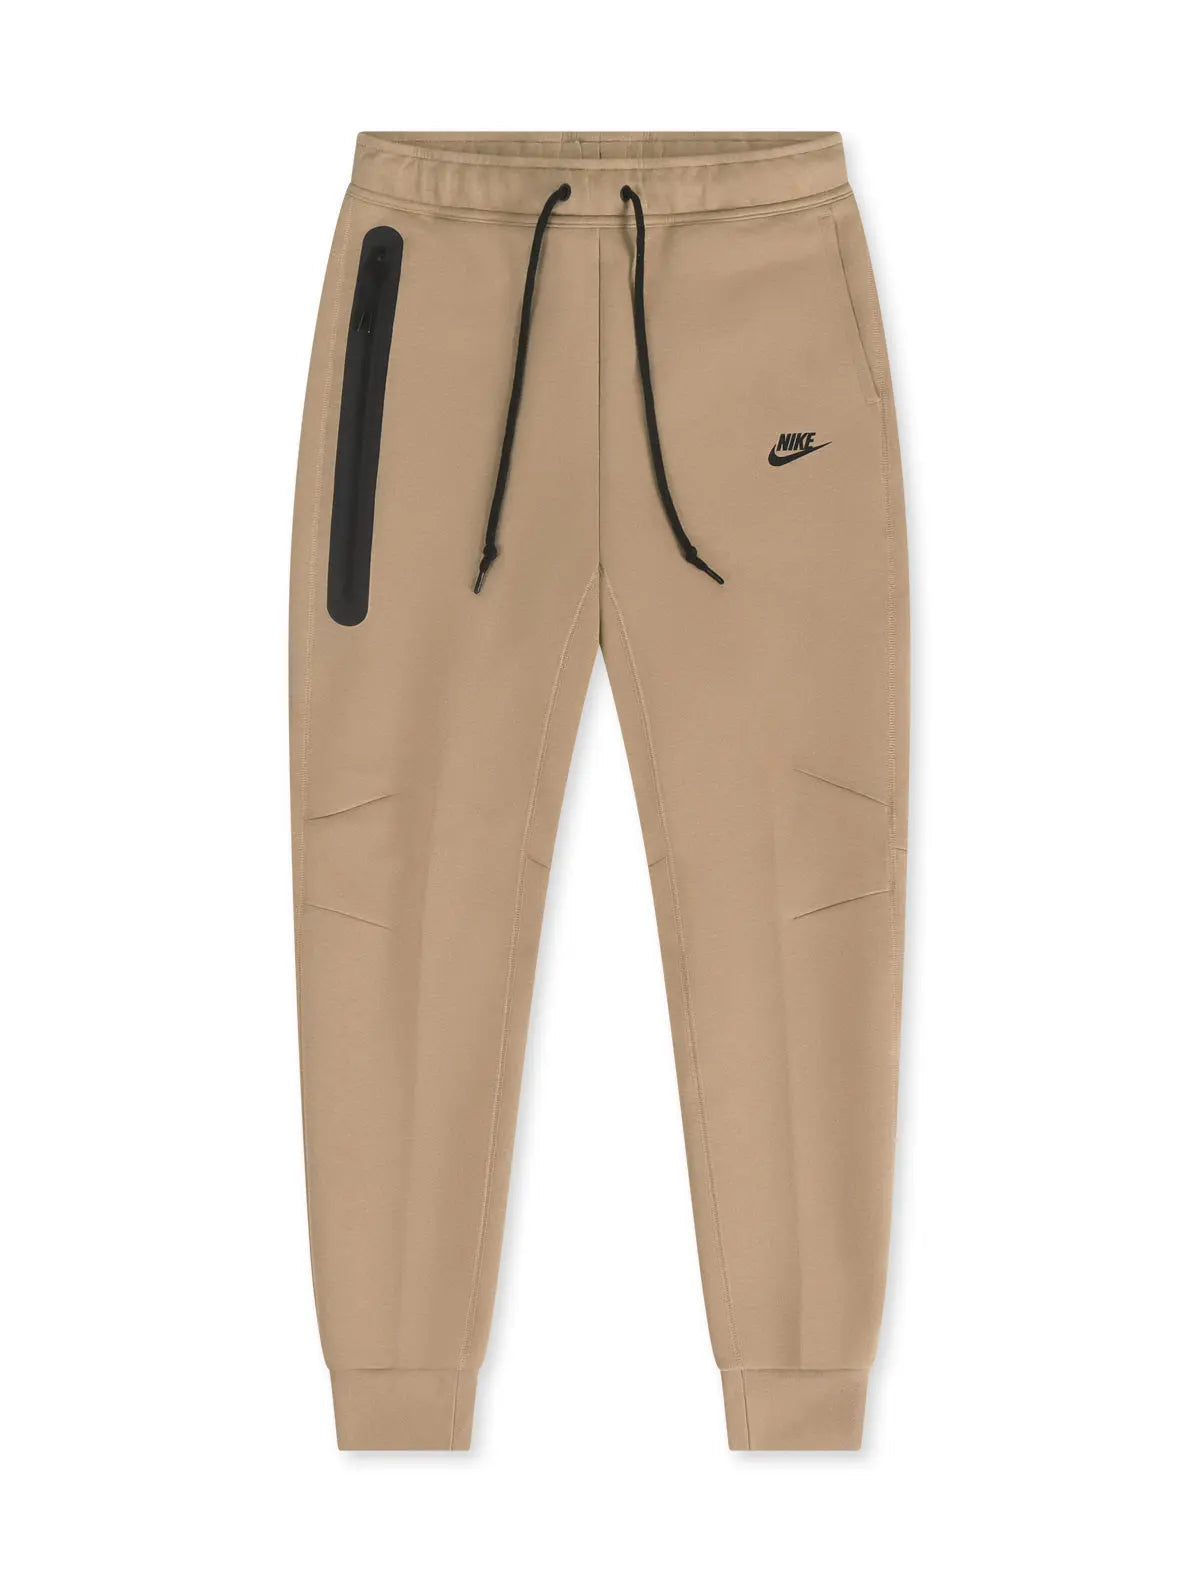 Men's Nike Red/Black Sportswear Swoosh Tech Fleece Pants - XL - Walmart.com